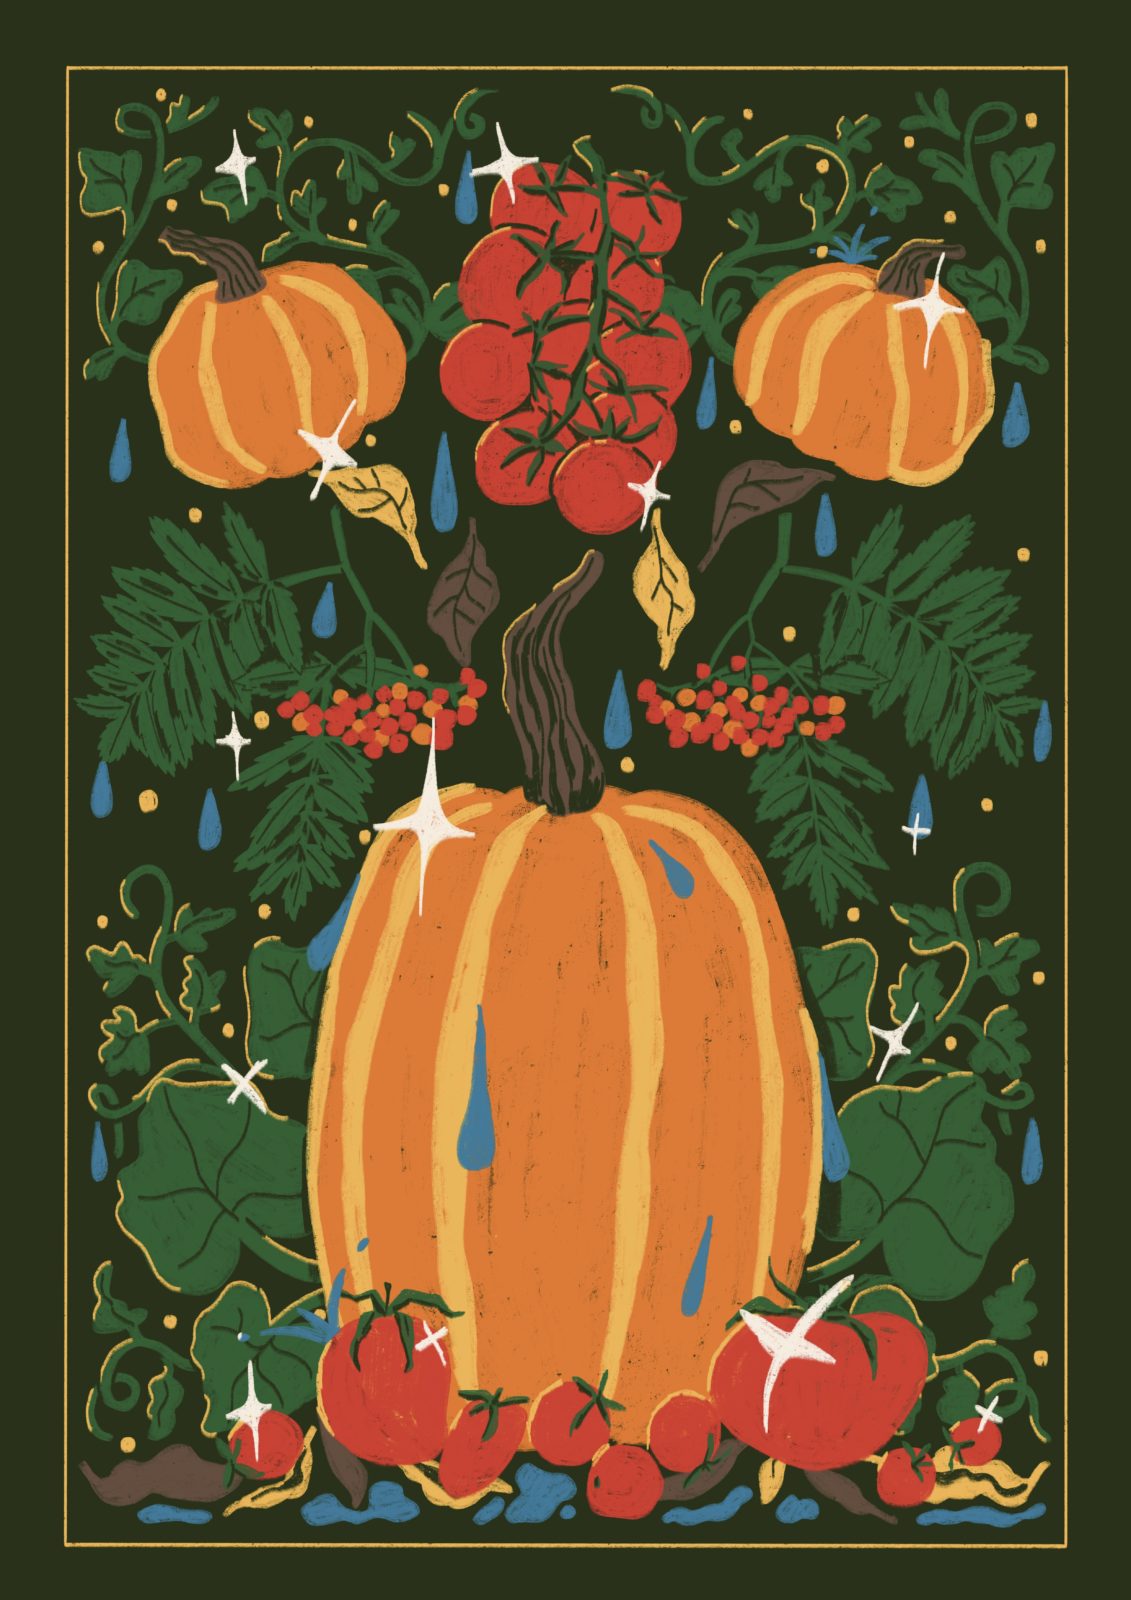 Sonny Ross Teatowel autumn market theme illustration 